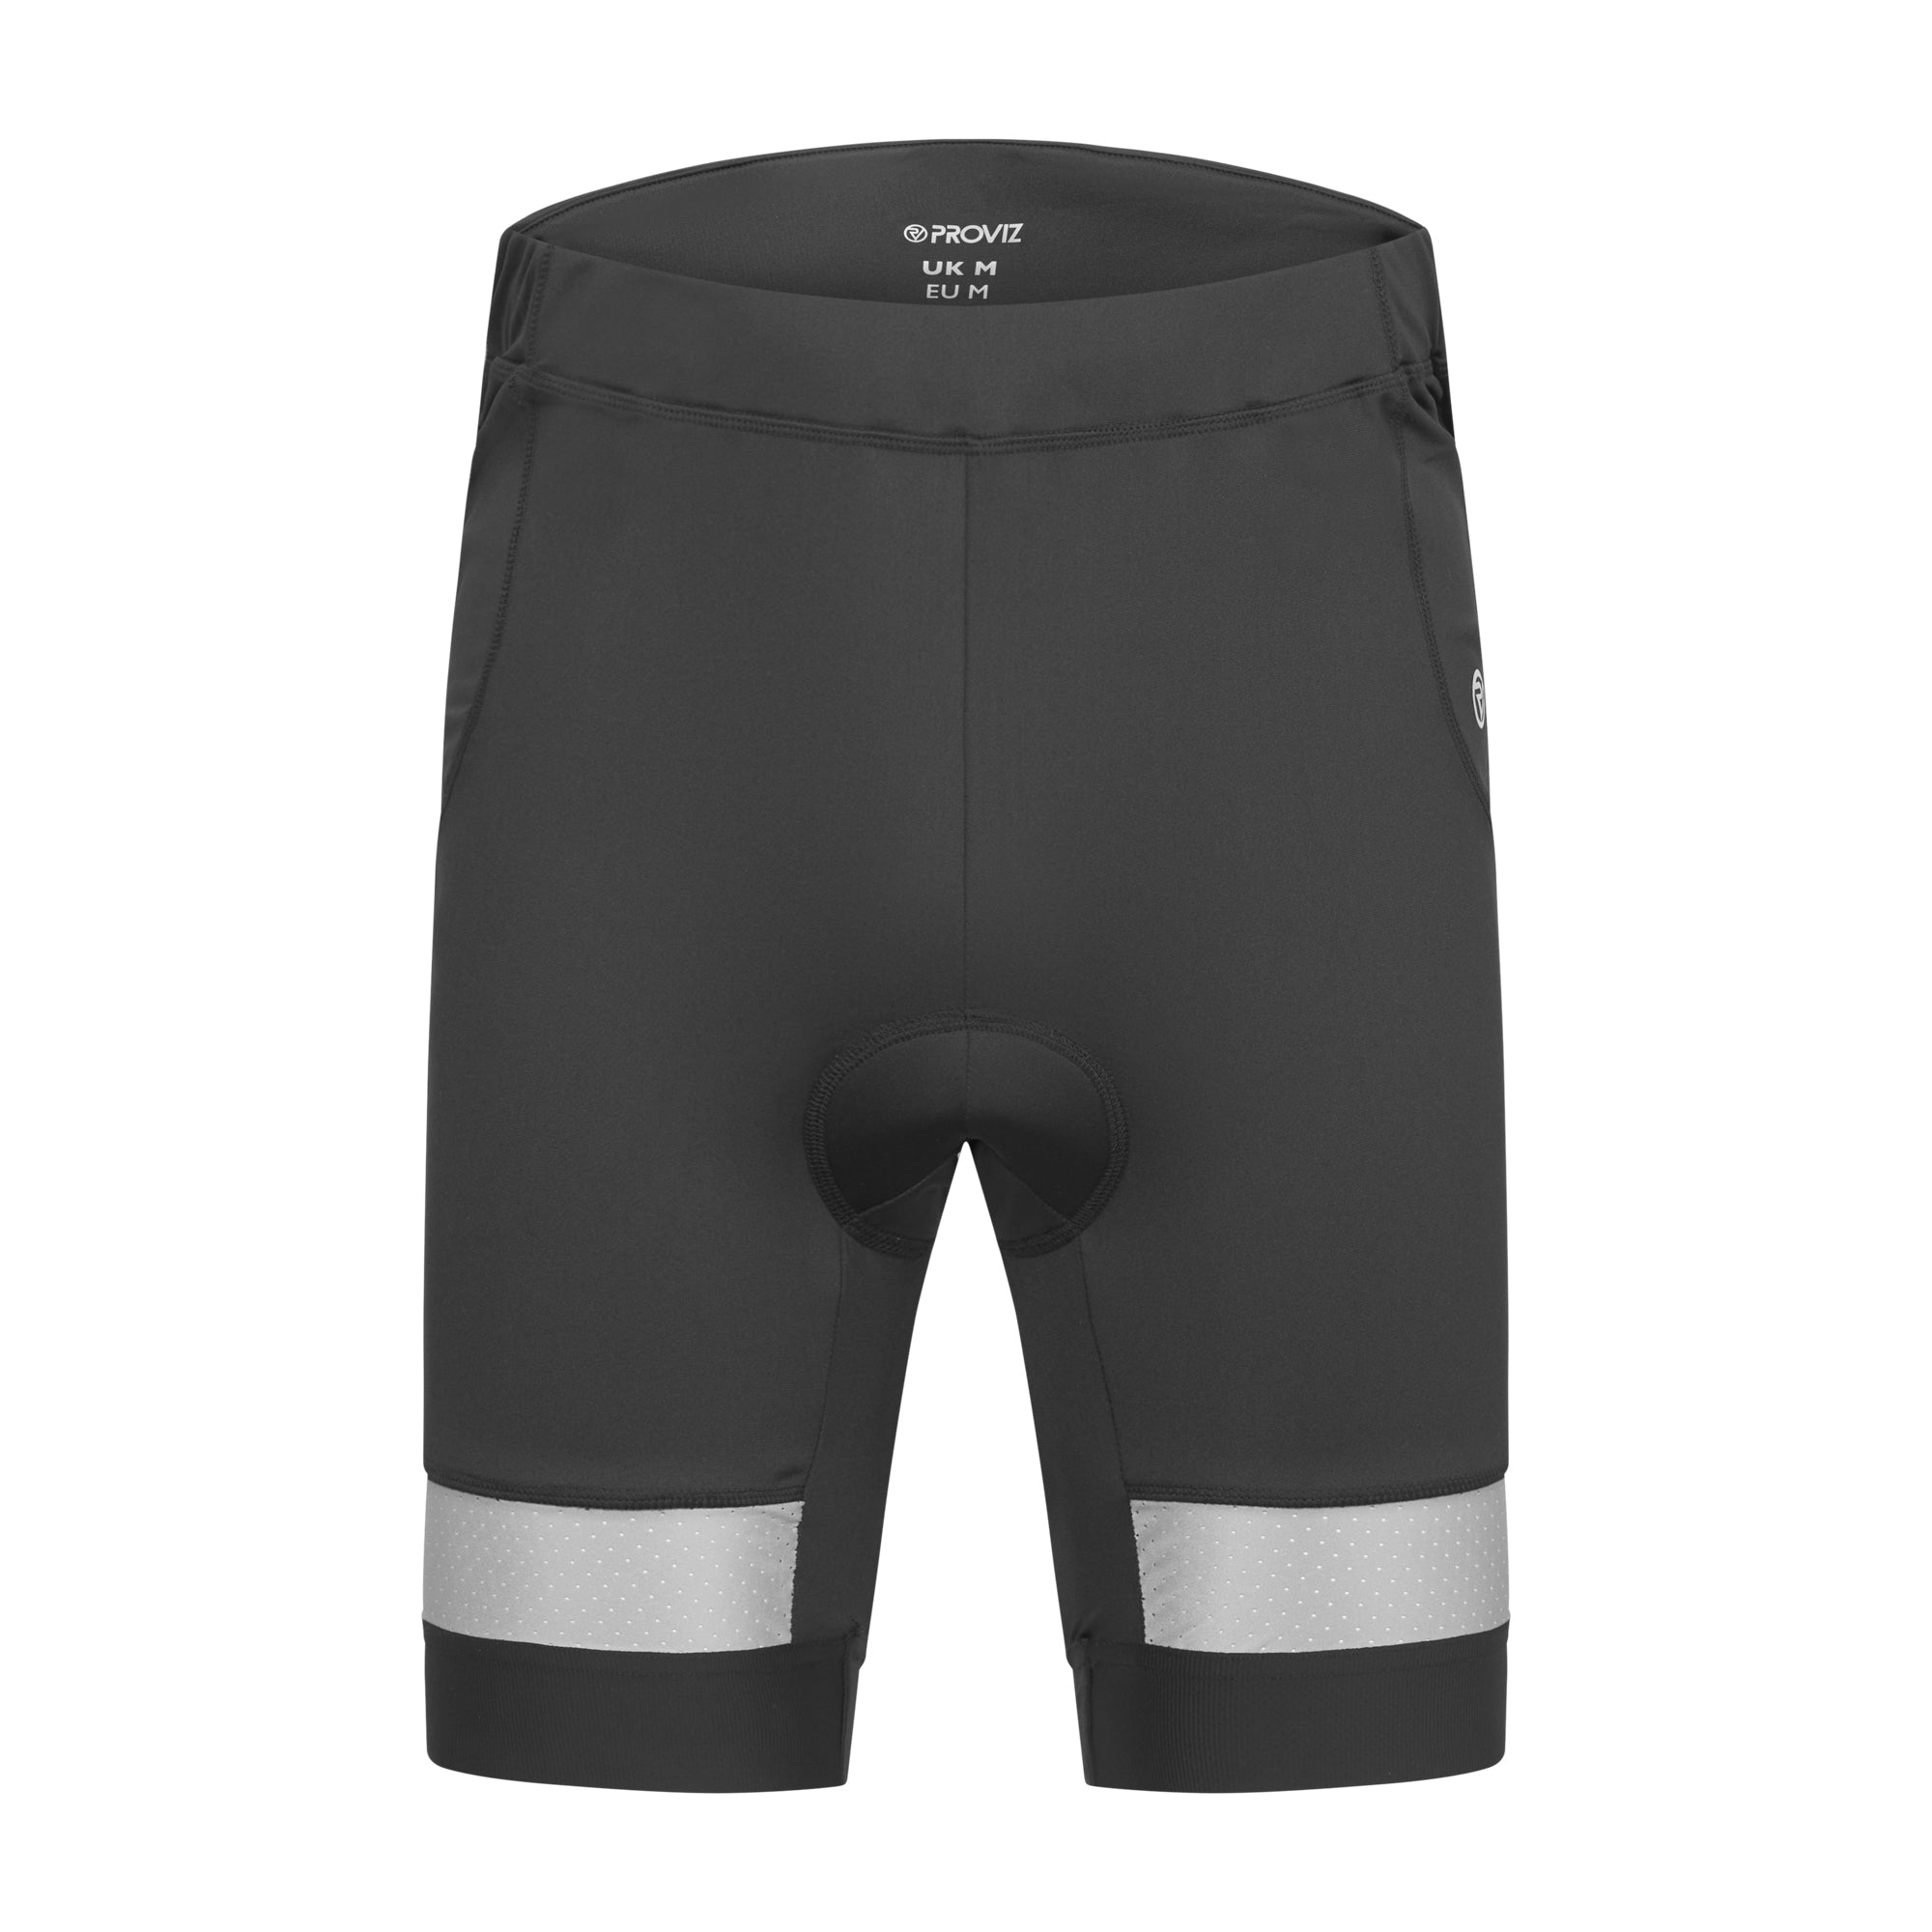 An image of Gepolsterte für Männer Rad-shorts - für Männer - EUR XL - Proviz - Reflect36...